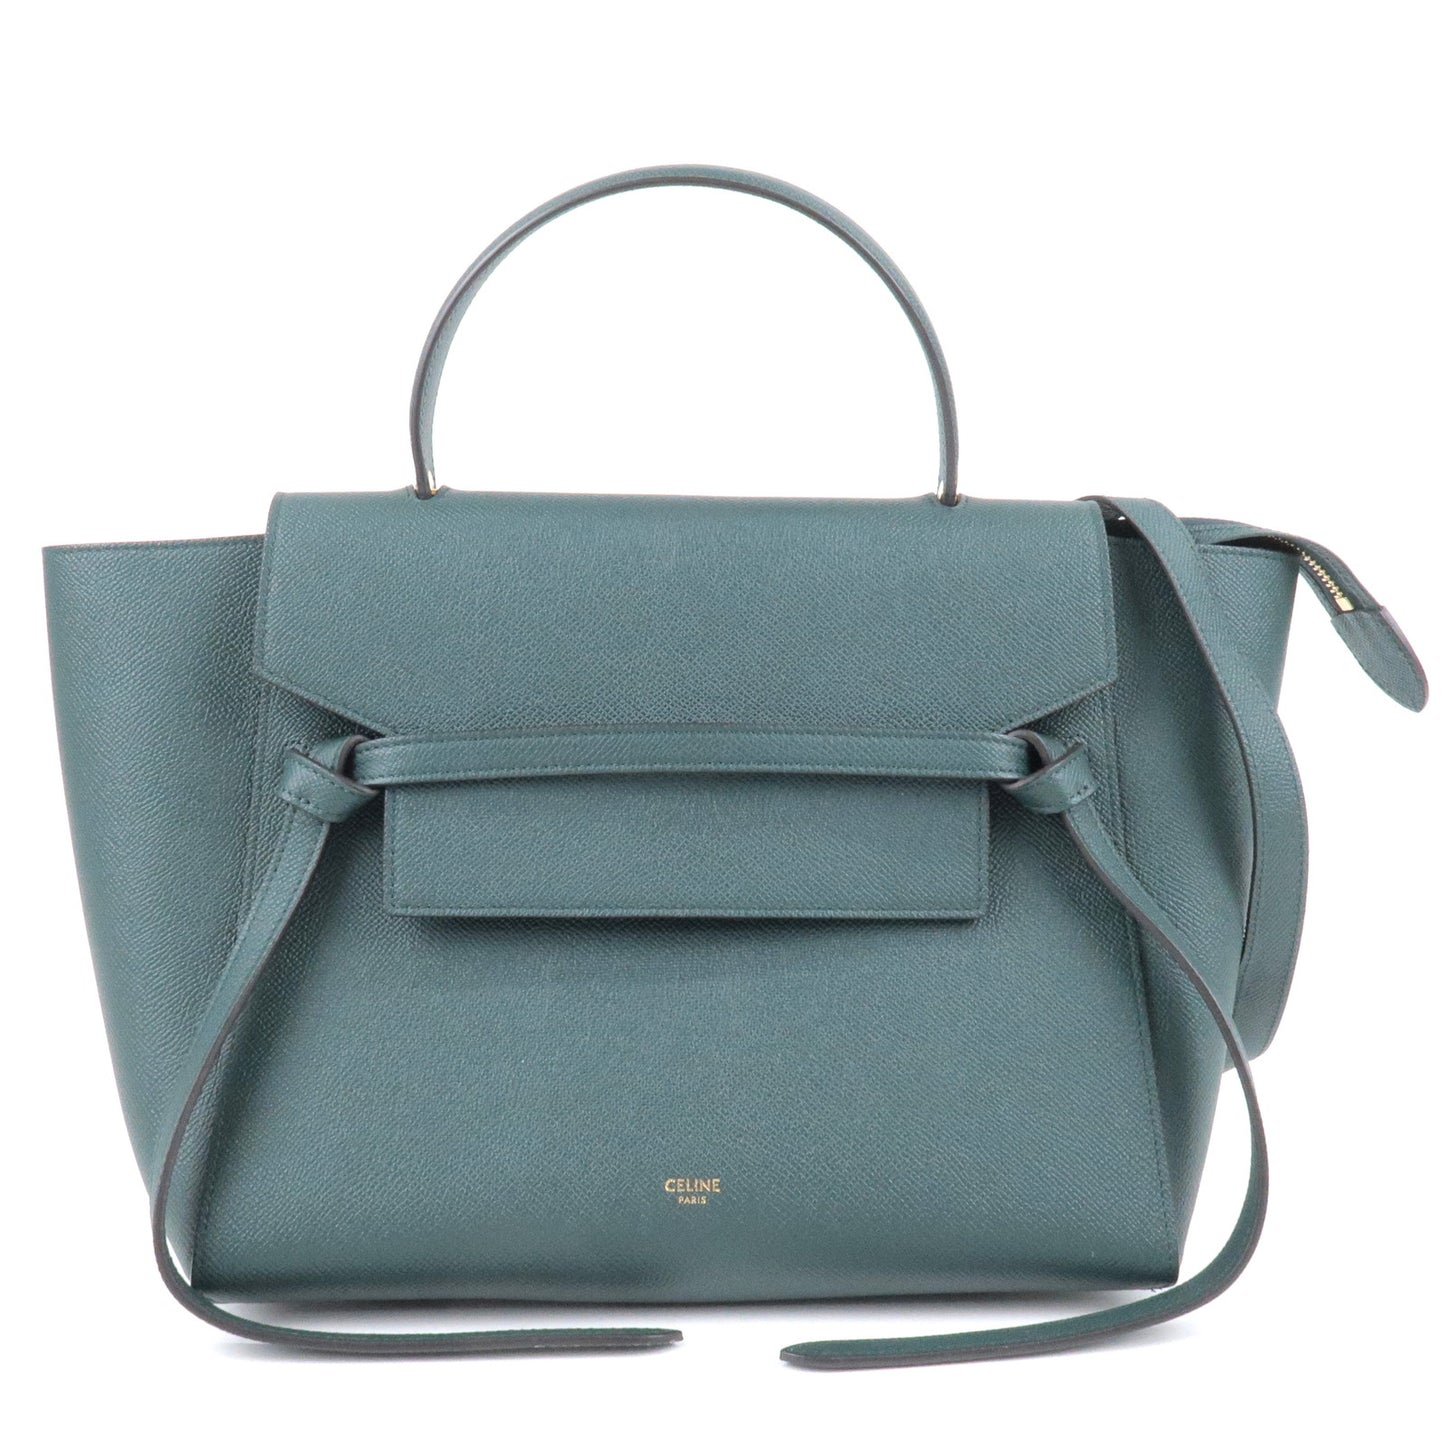 CELINE-Leather-Mini-Belt-Bag-Hand-Bag-Shoulder-Bag-Green-189103